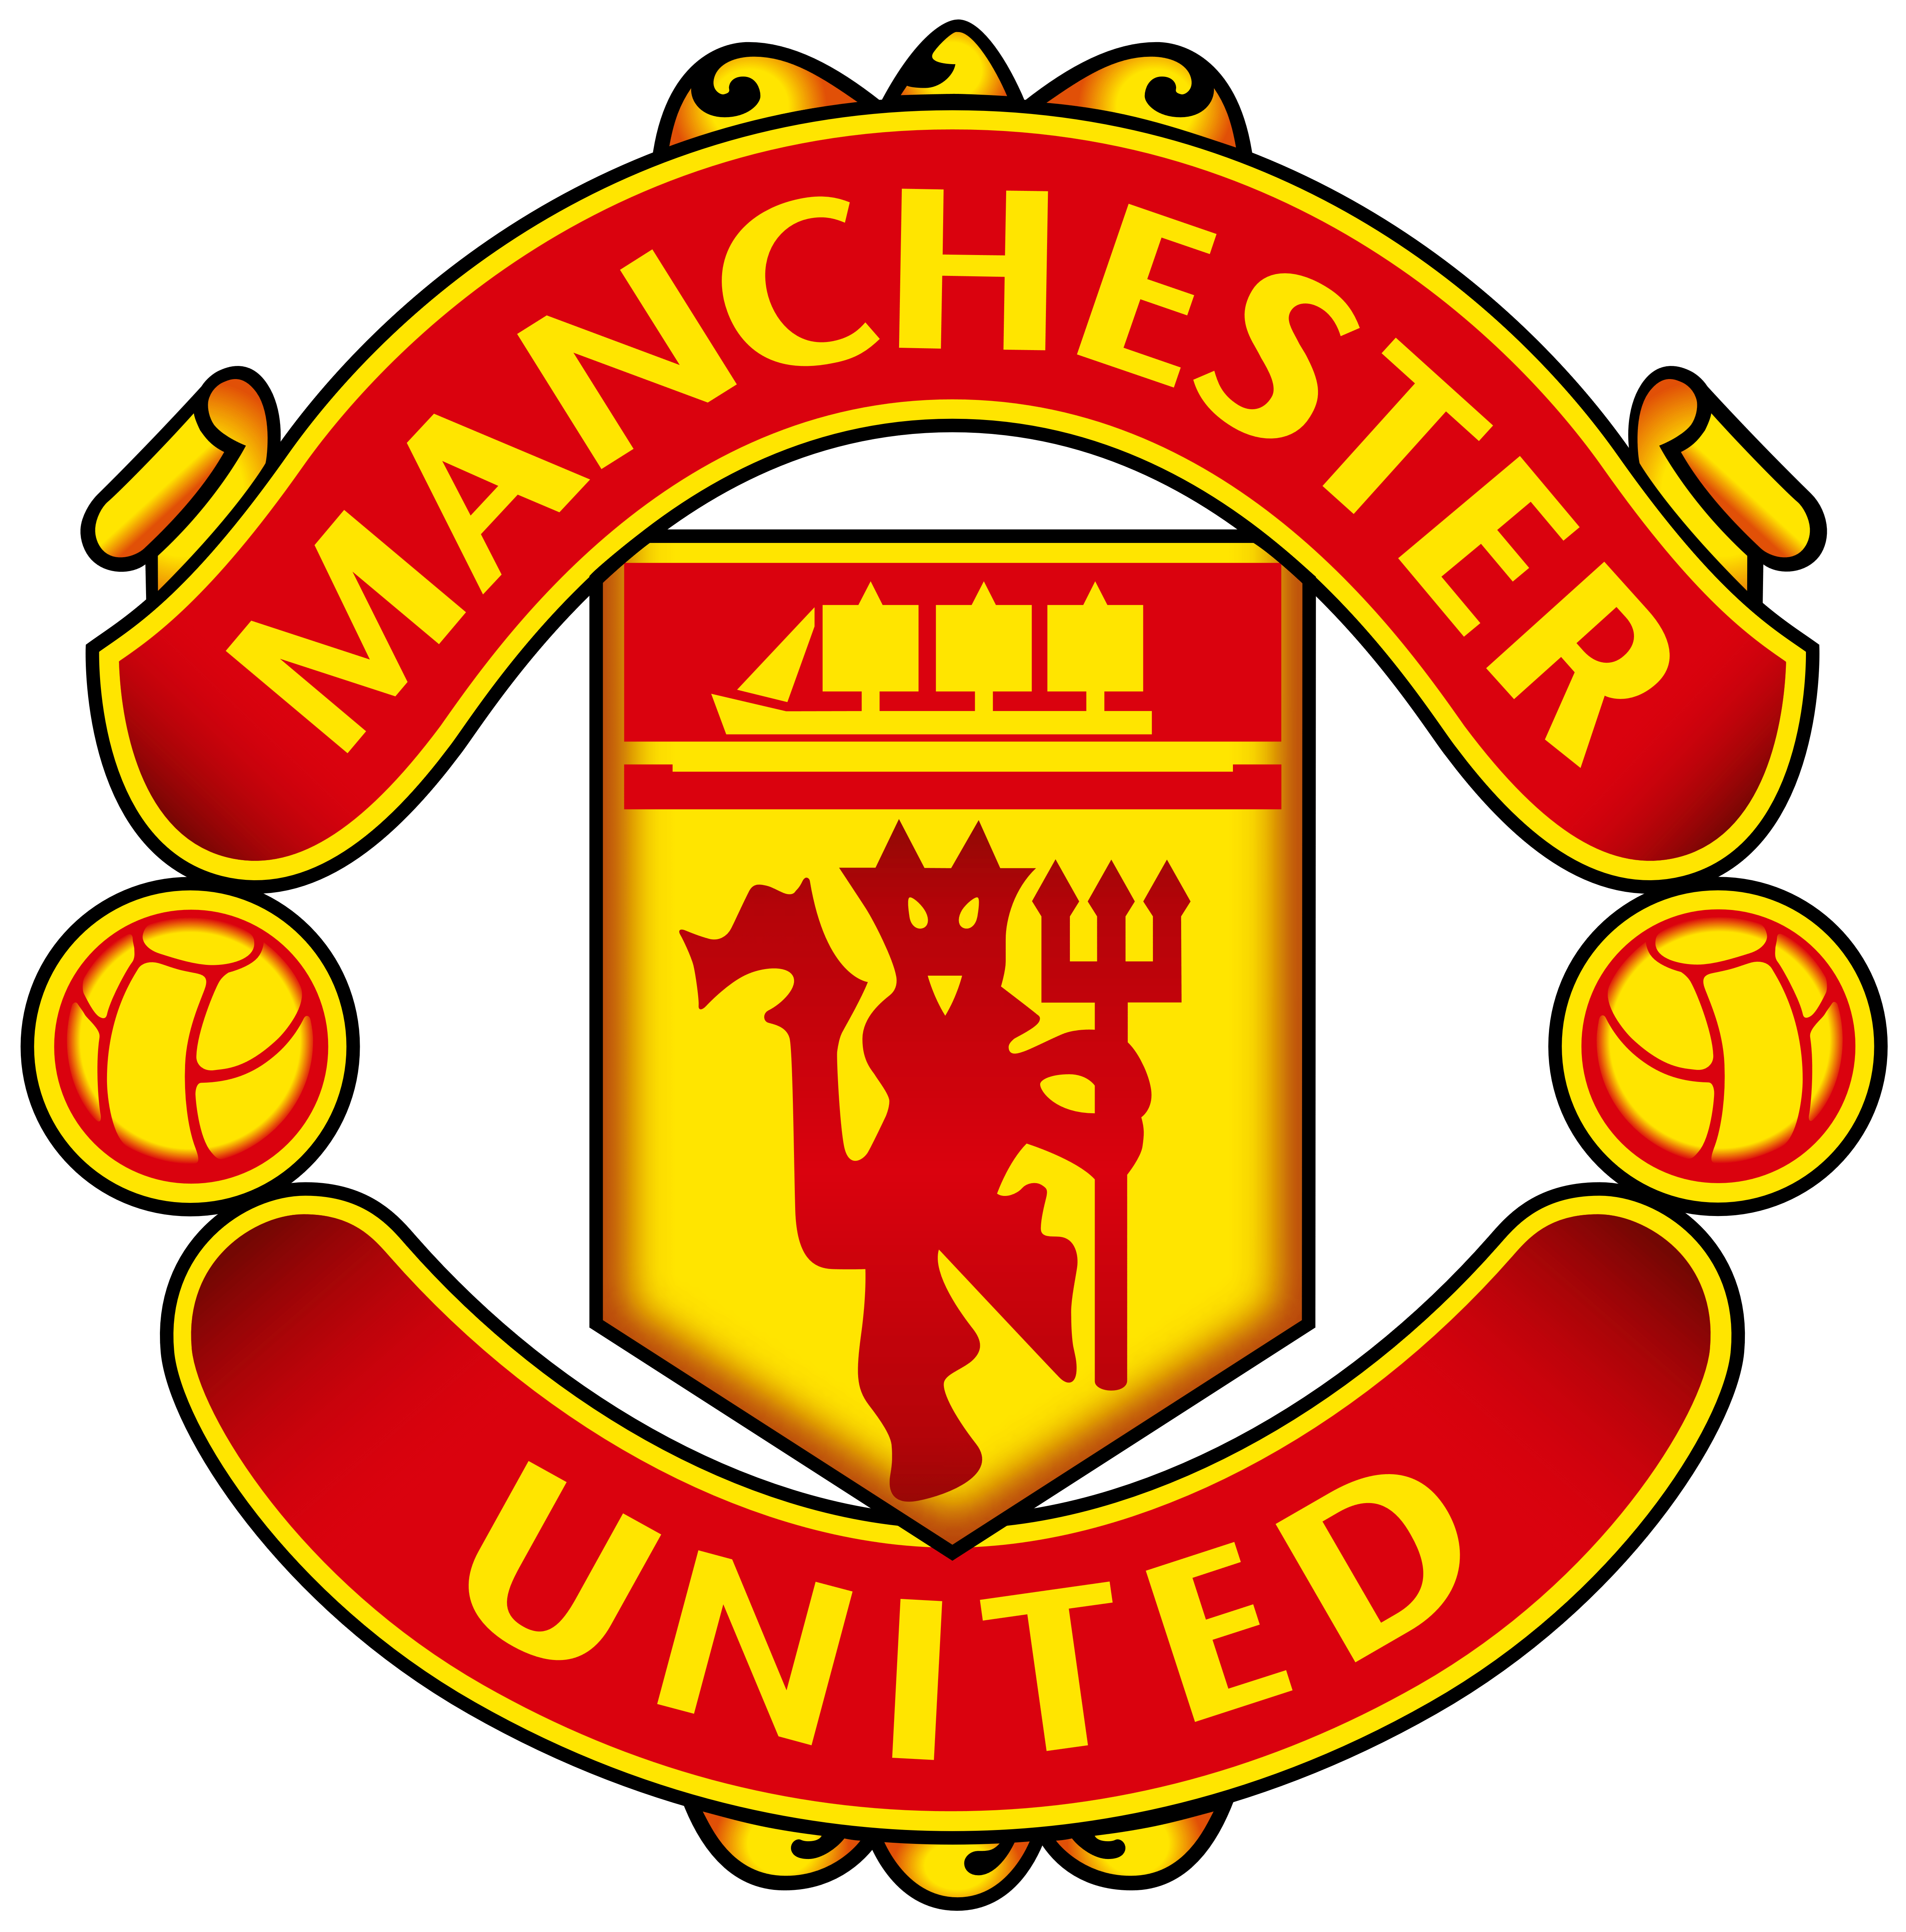 Manchester United Logo - Manchester United – Logos Download